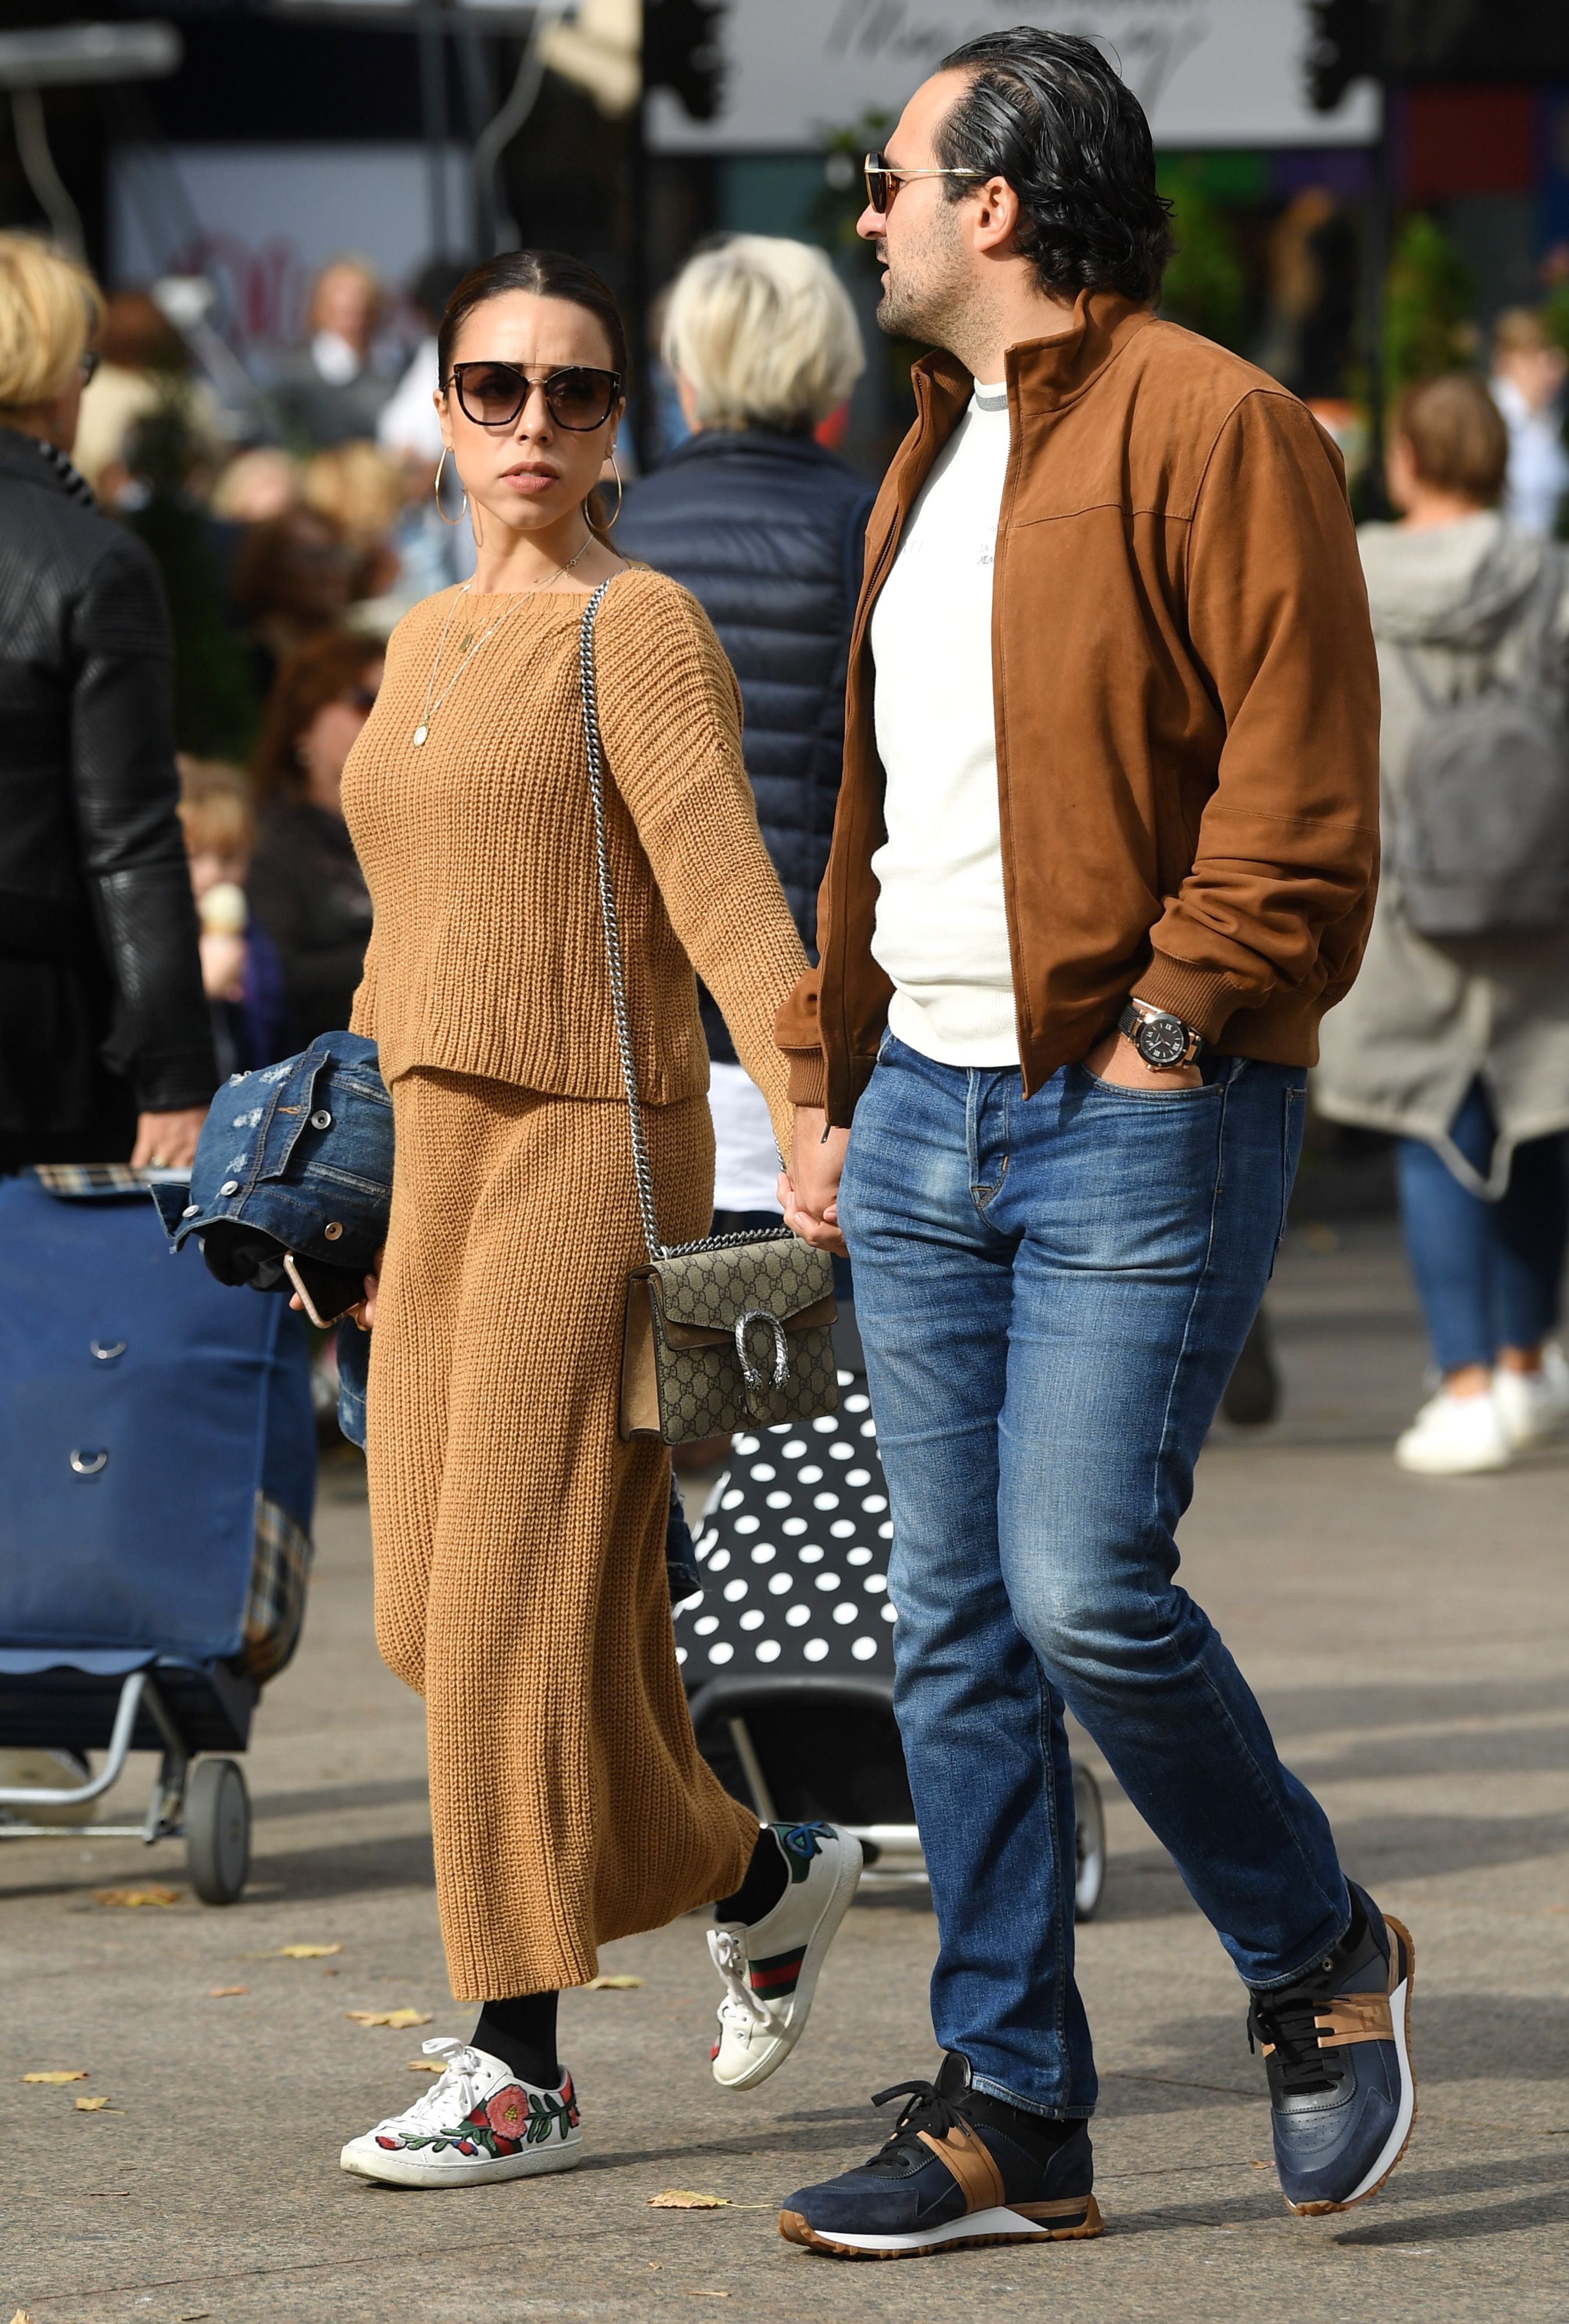 Ovaj par izgleda kao da je sišao s modne piste, a ona nosi jednu od najpopularnijih torbica sezone